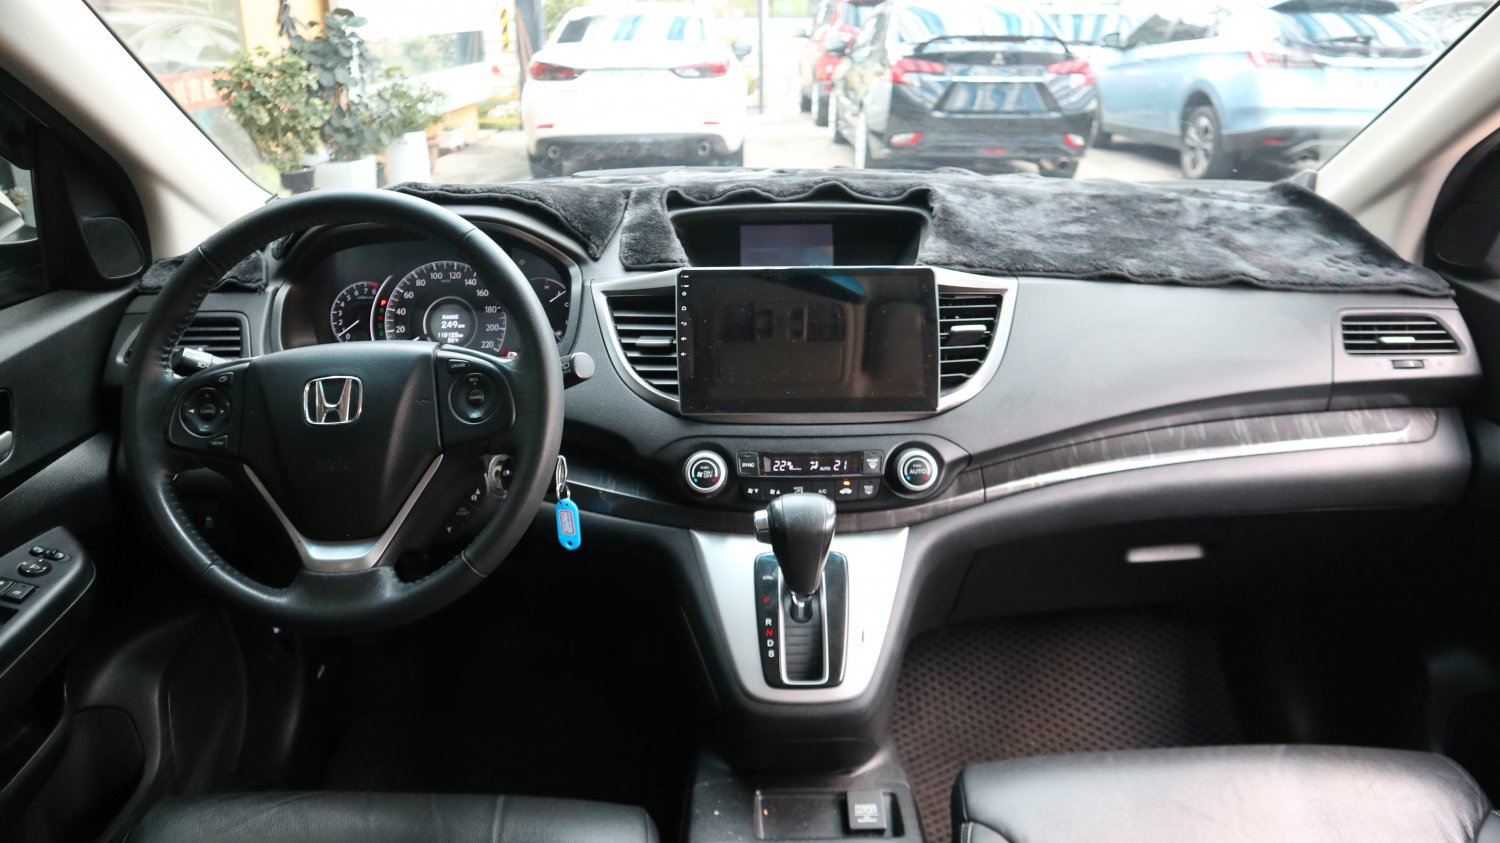 Honda 本田 ／ CR-V ／ 2015年 ／ 2015年Honda CRV 白色 本田中古車 ／ MG車庫(台南)